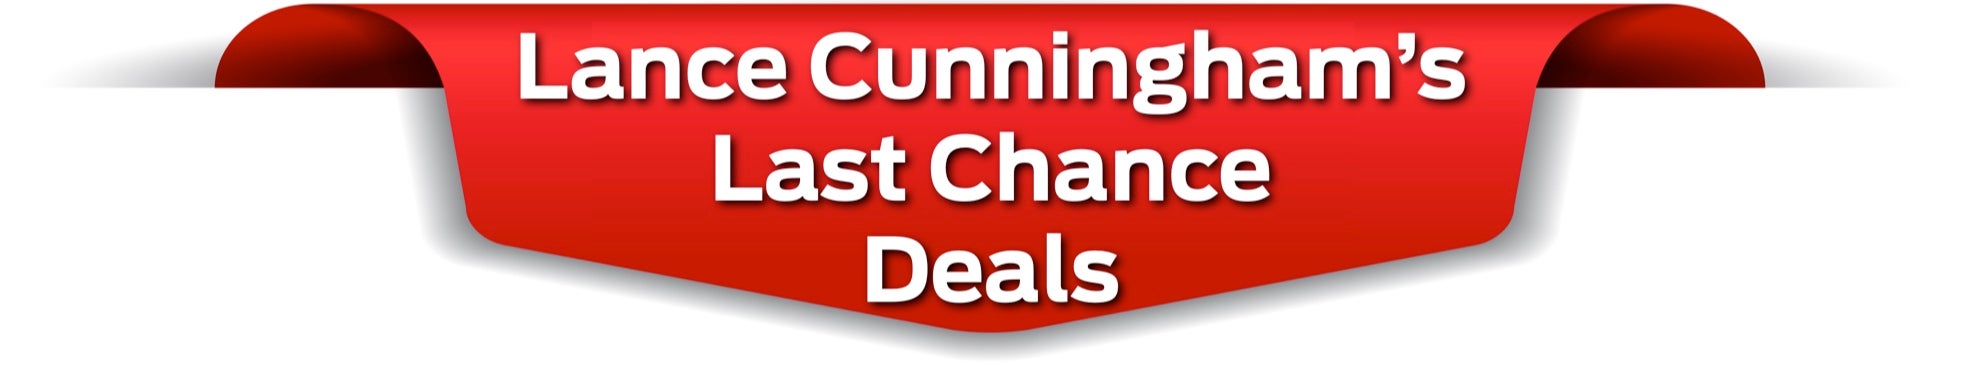 Lance Cunninghams Last Chance Deals